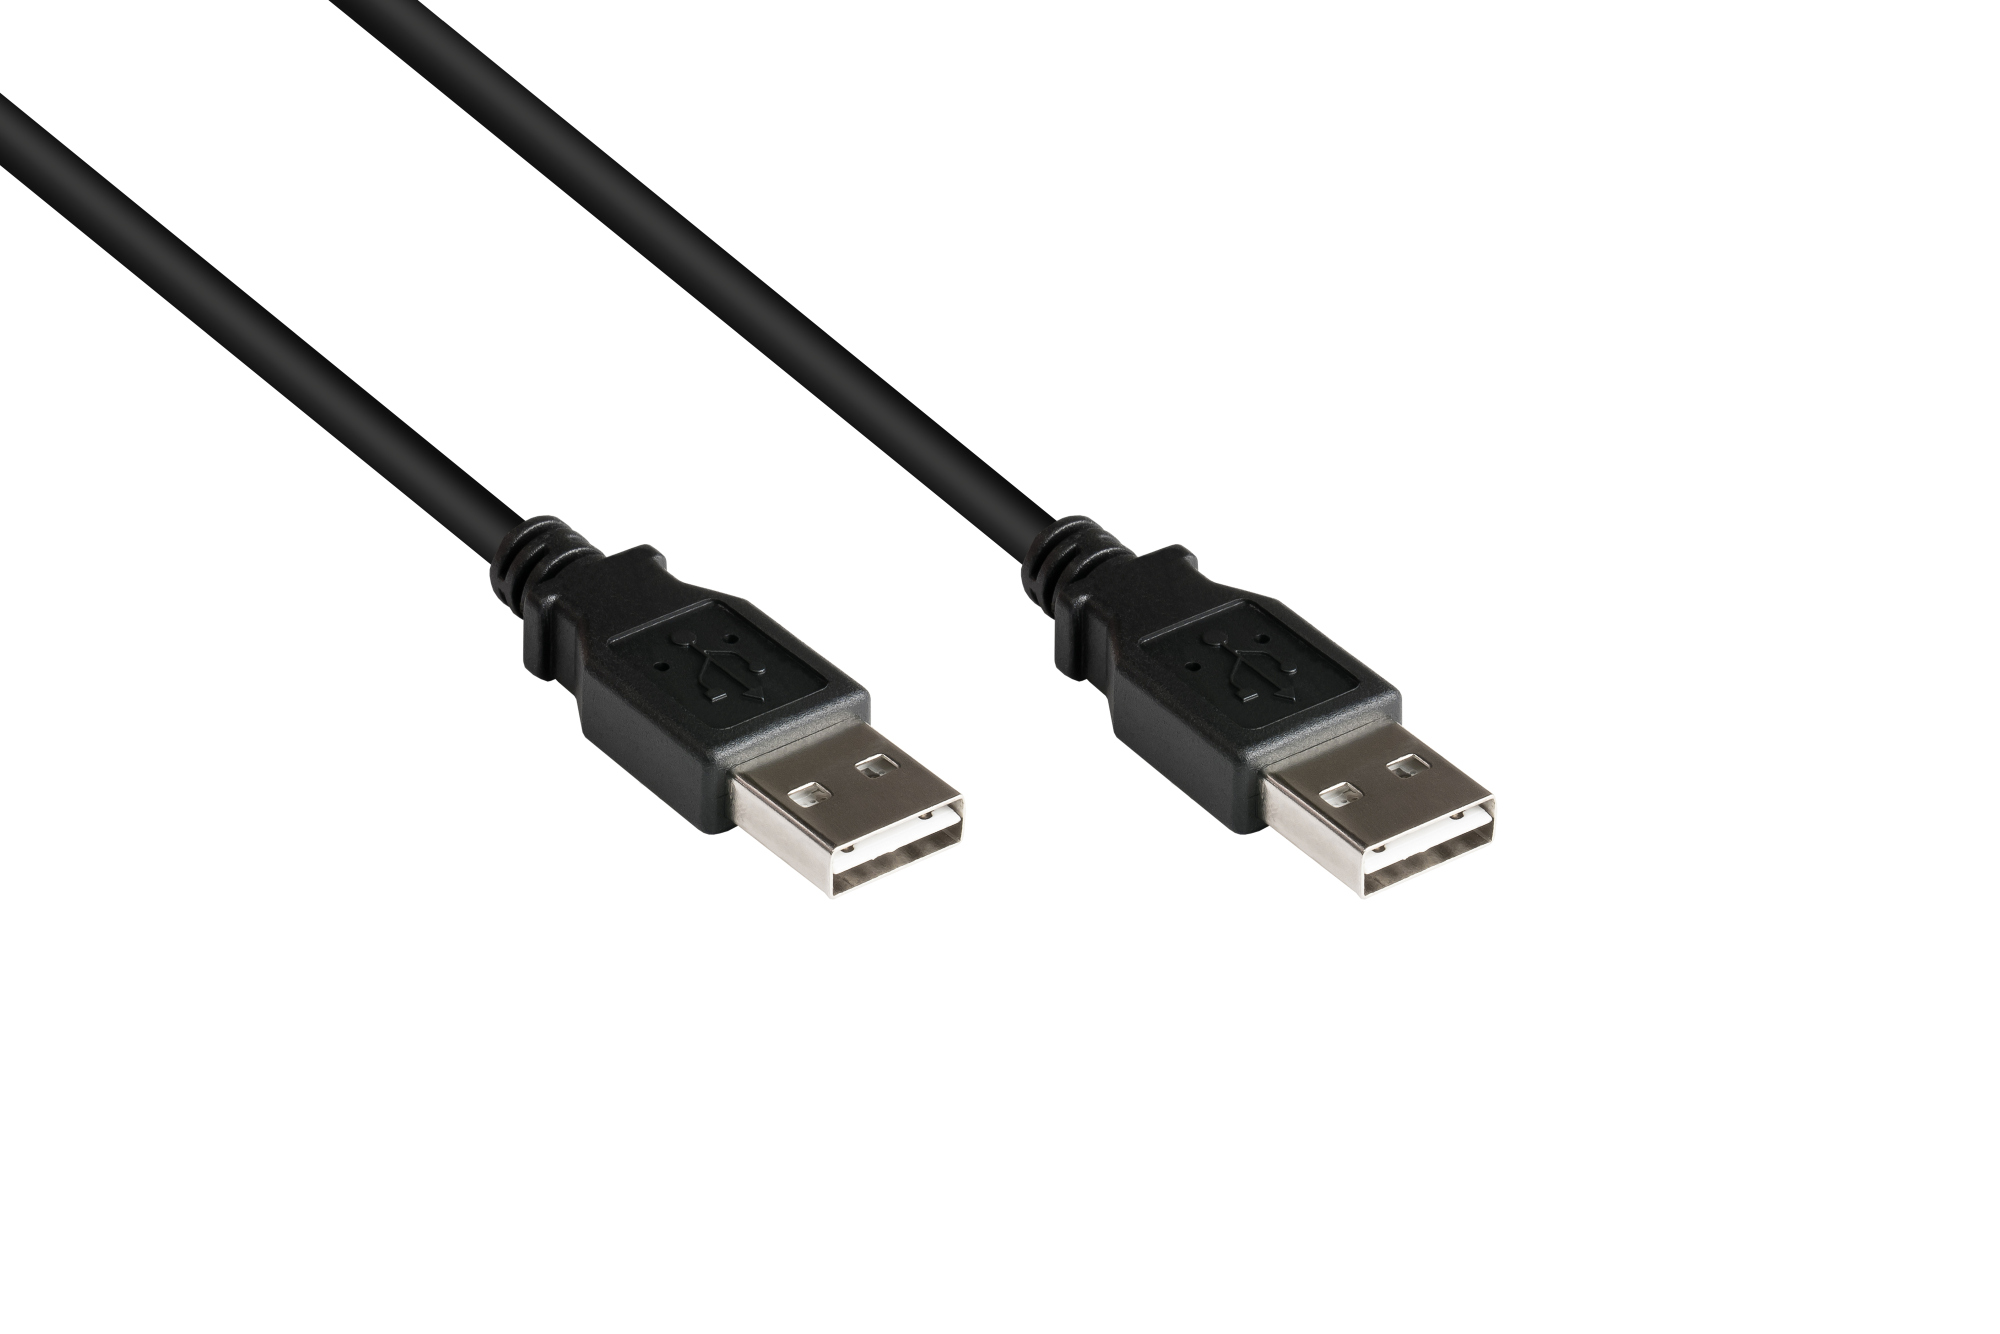 Anschlusskabel USB 2.0 High-Speed EASY A Stecker an EASY A Stecker, schwarz, 2m